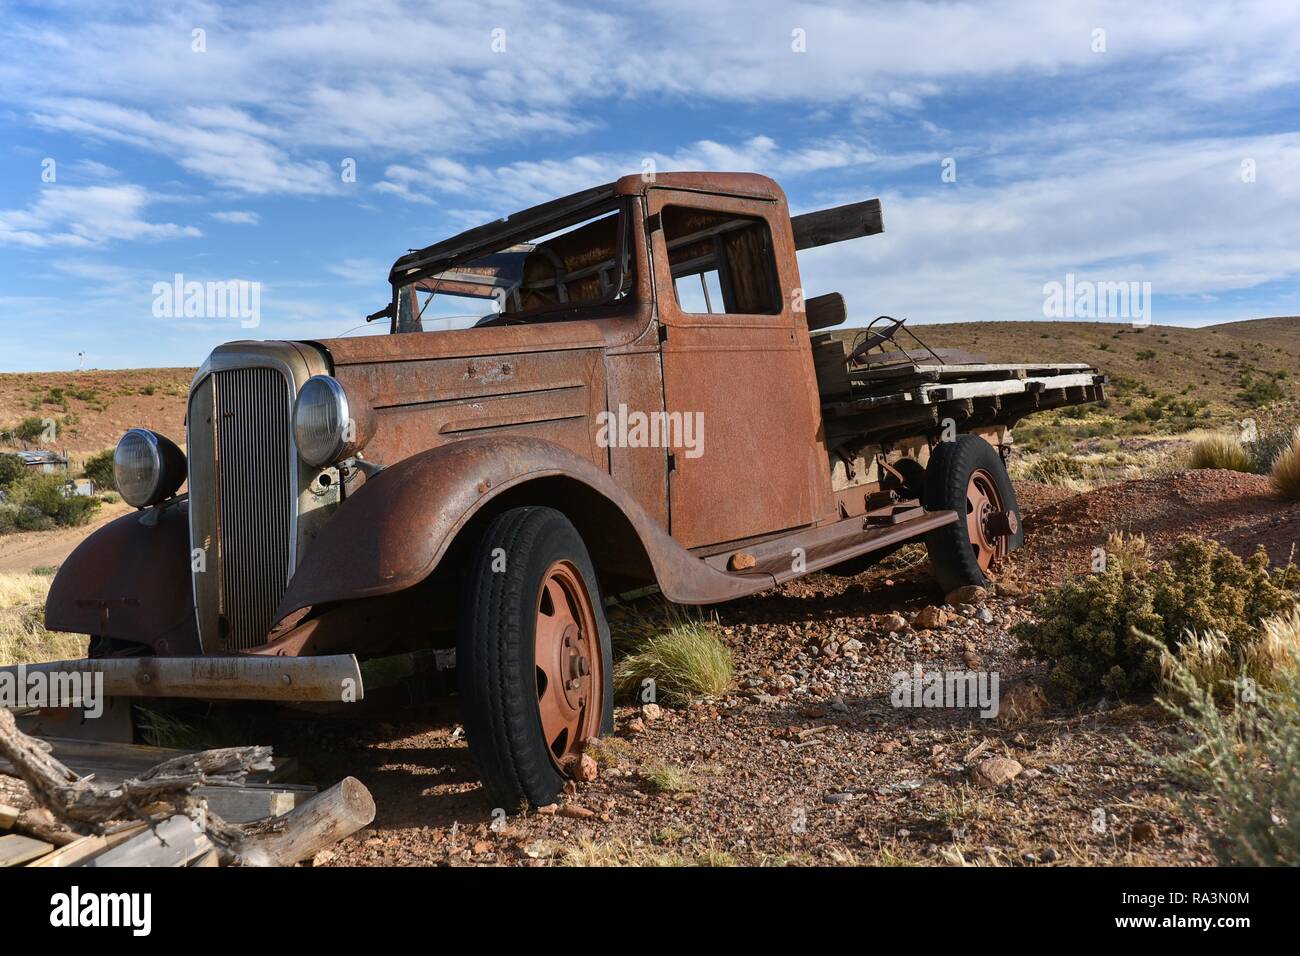 Rusty viejo coche, coche clásico en el paisaje árido, cerca de Comodoro Rivadavia, Patagonia, Argentina Foto de stock